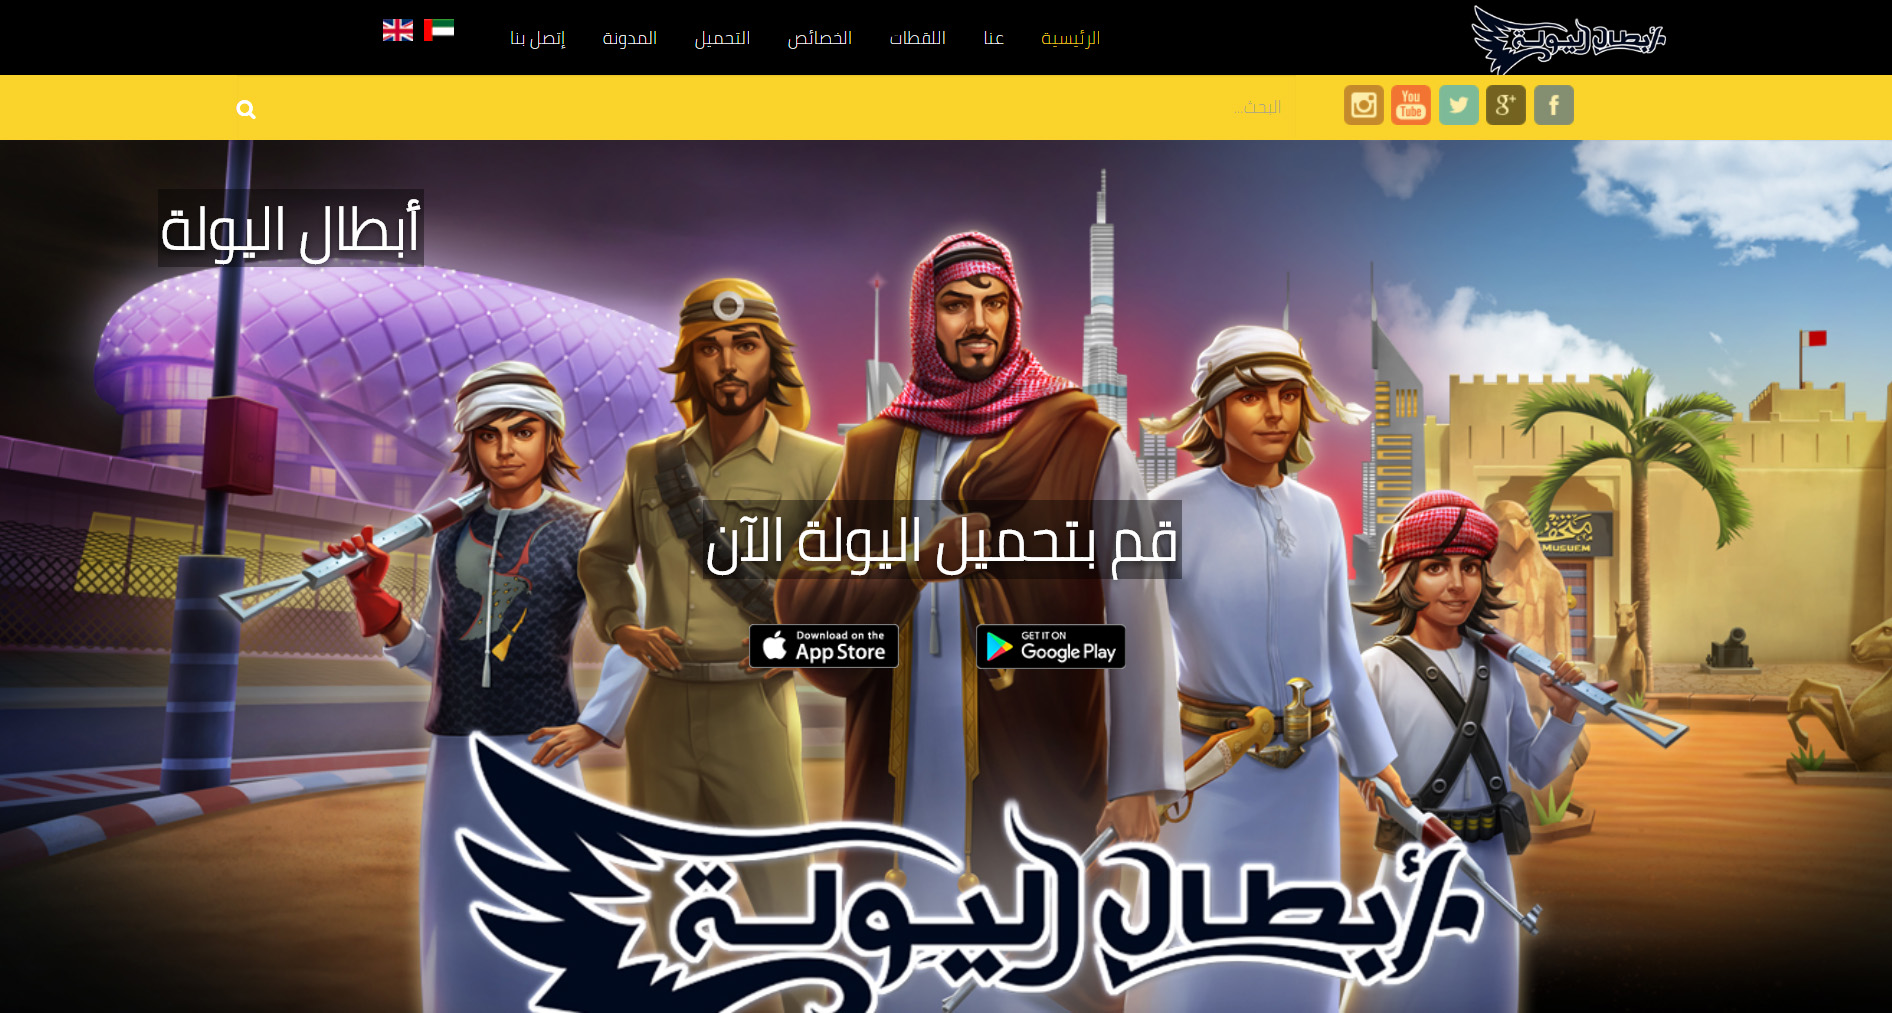 تصميم موقع الكتروني خاص بلعبة أبطال اليولة فى السعودية